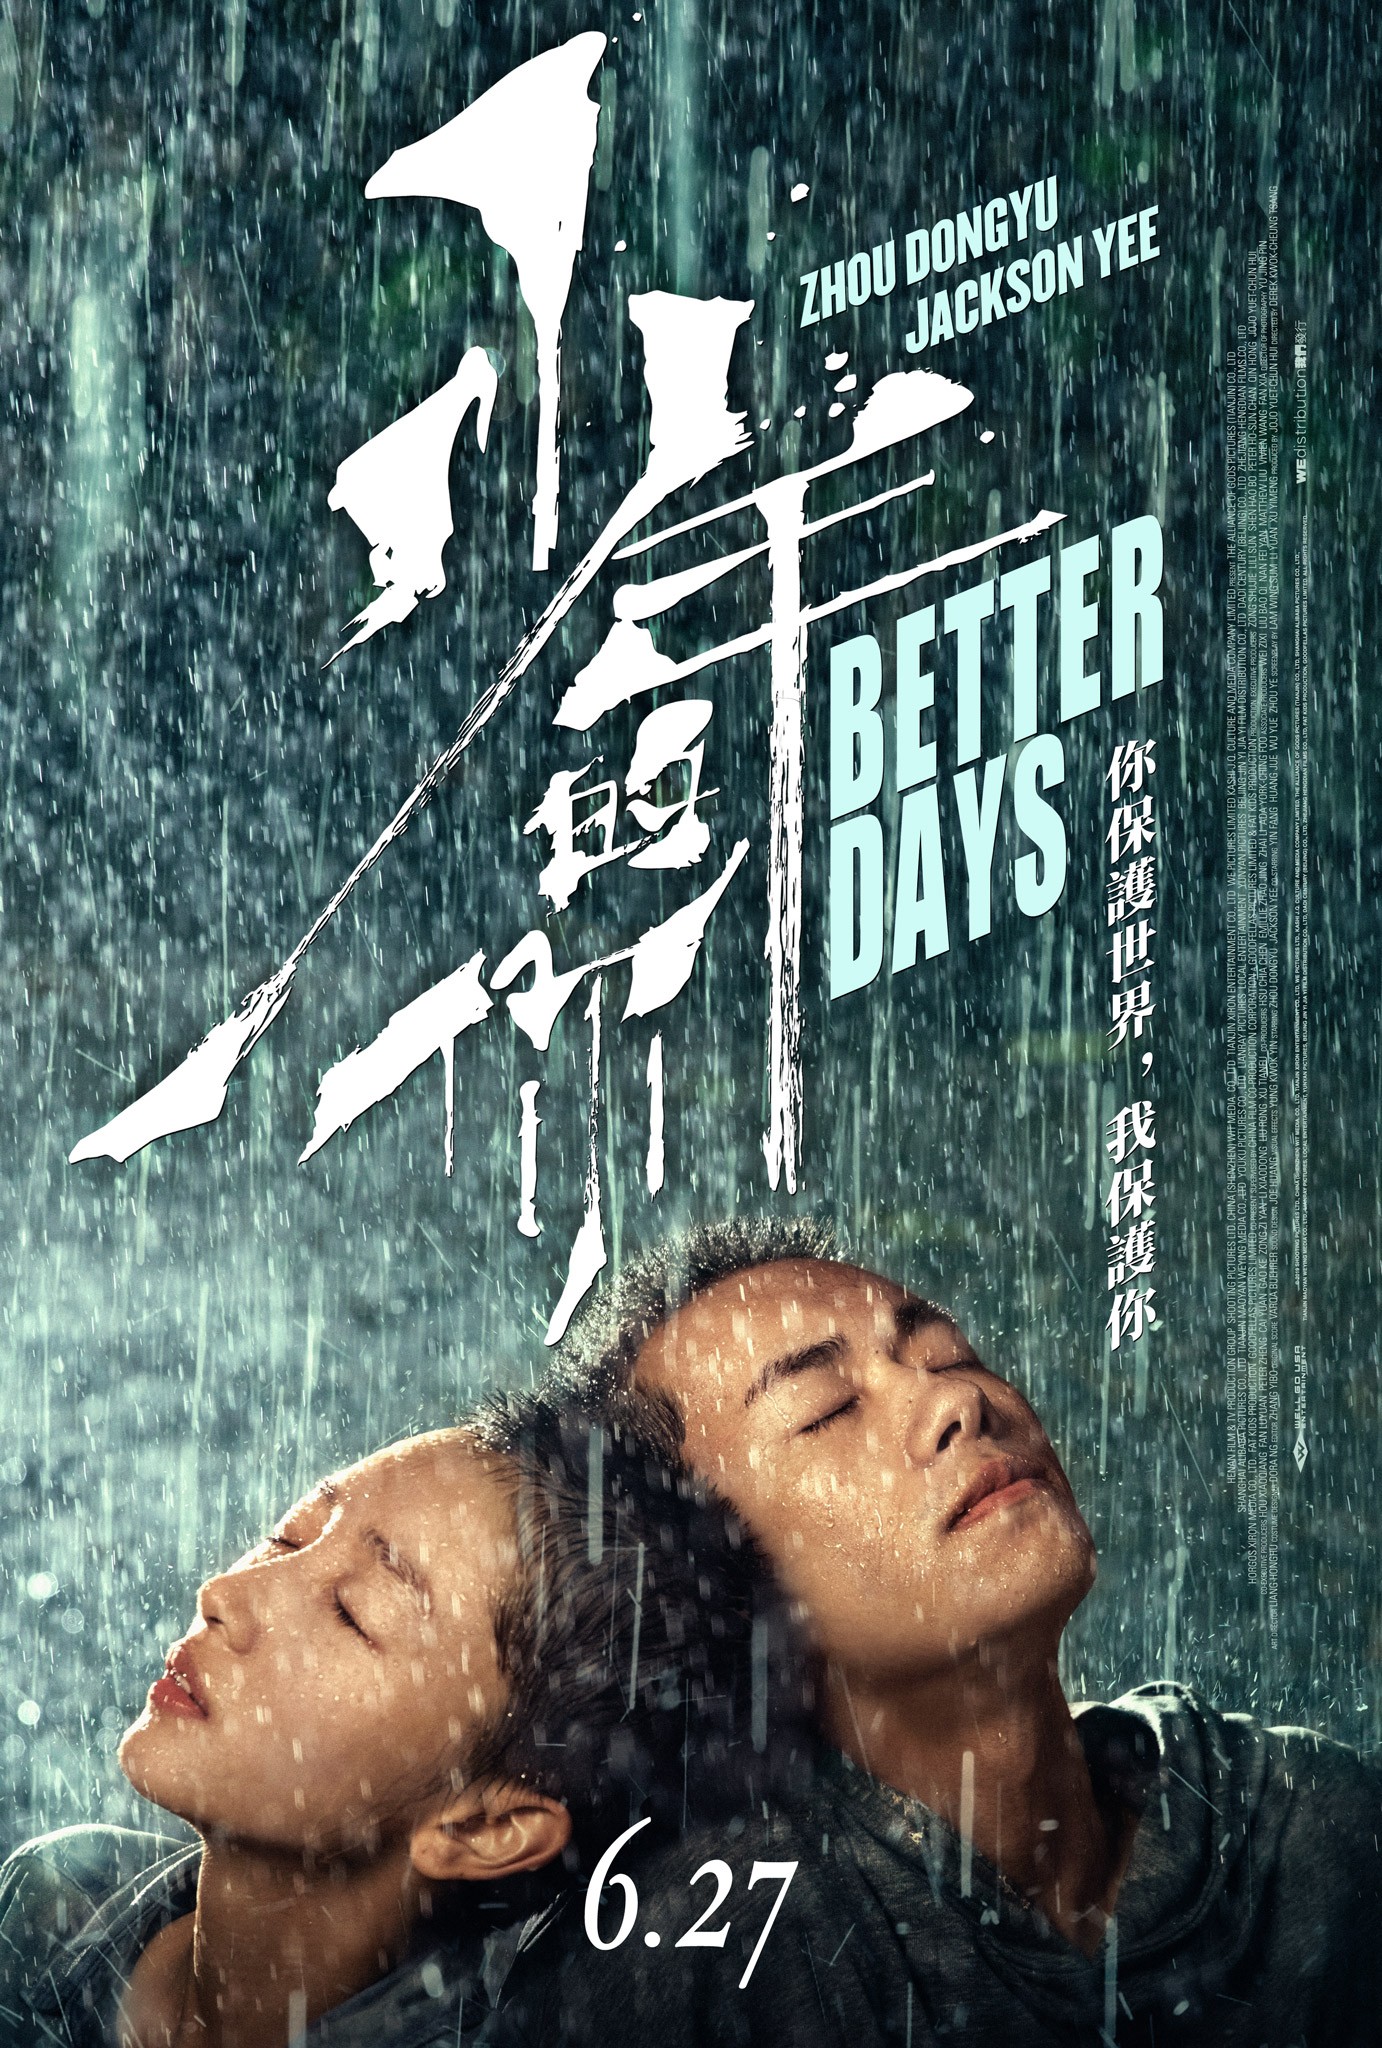 Dongyu Zhou - Rotten Tomatoes